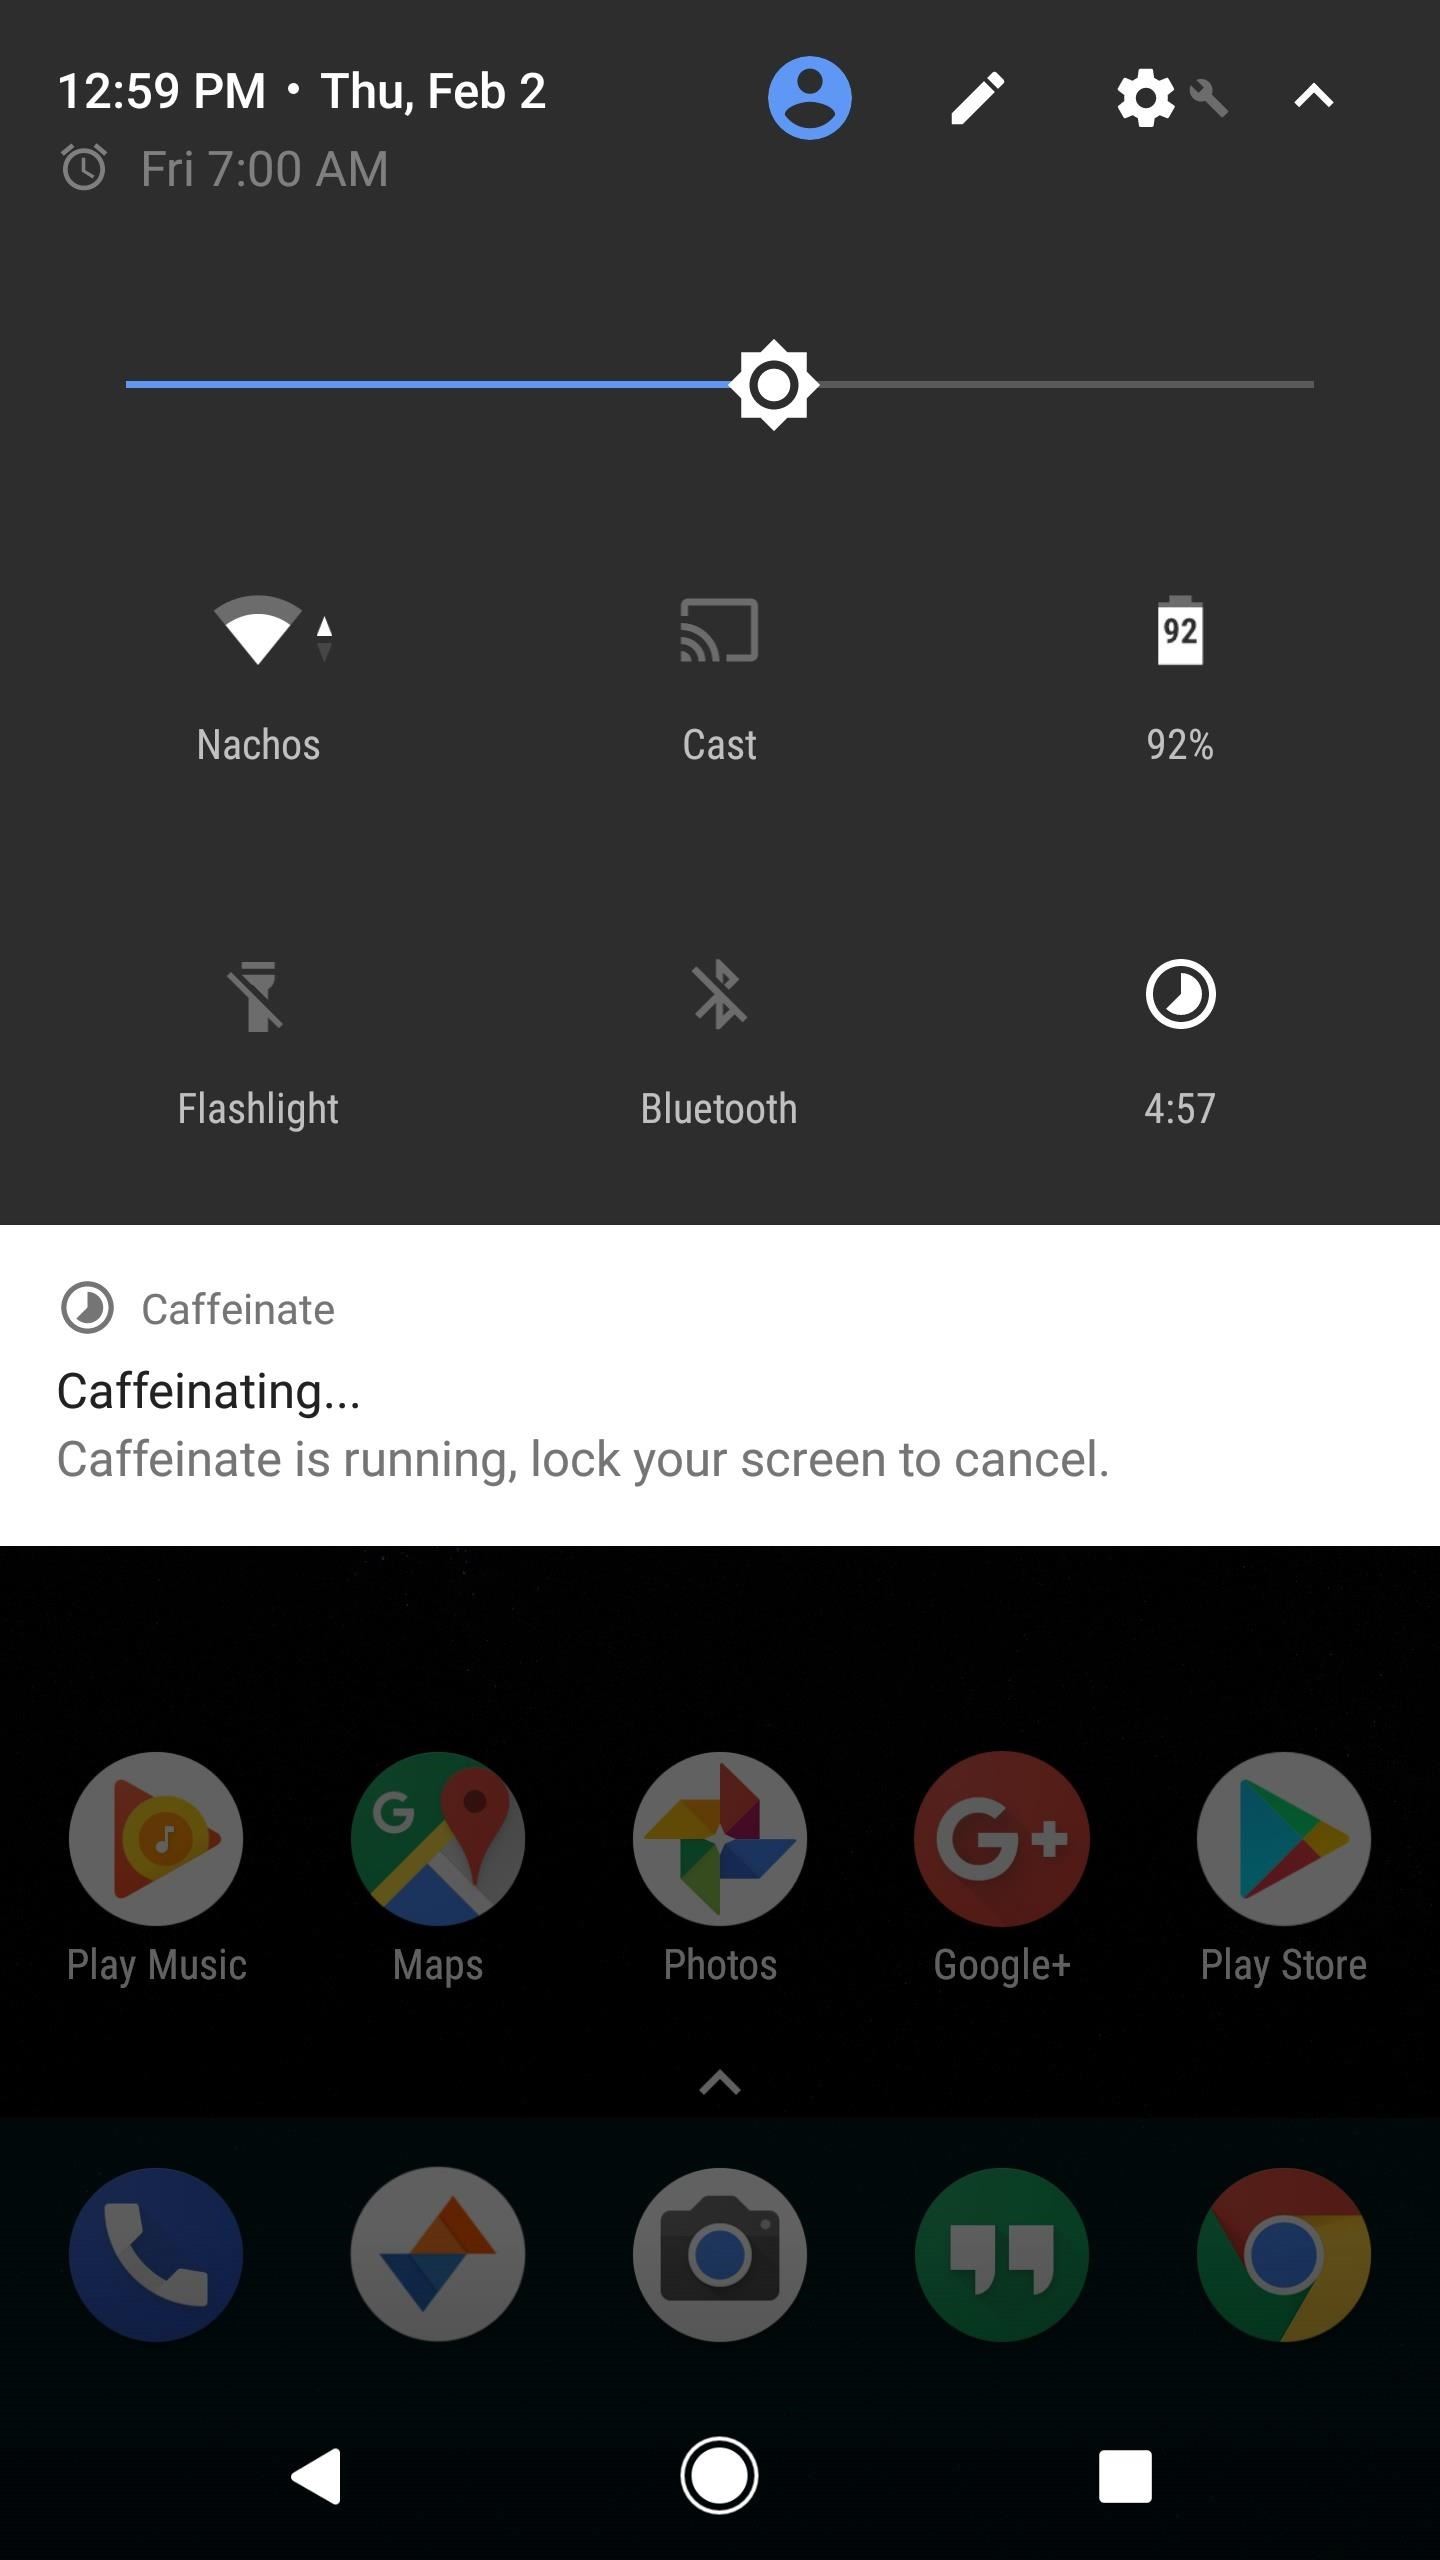 احصل على ميزة Caffeine الخاصة بـ CyanogenMod للحفاظ على الشاشة مستيقظة لفترة أطول عند الضغط على زر